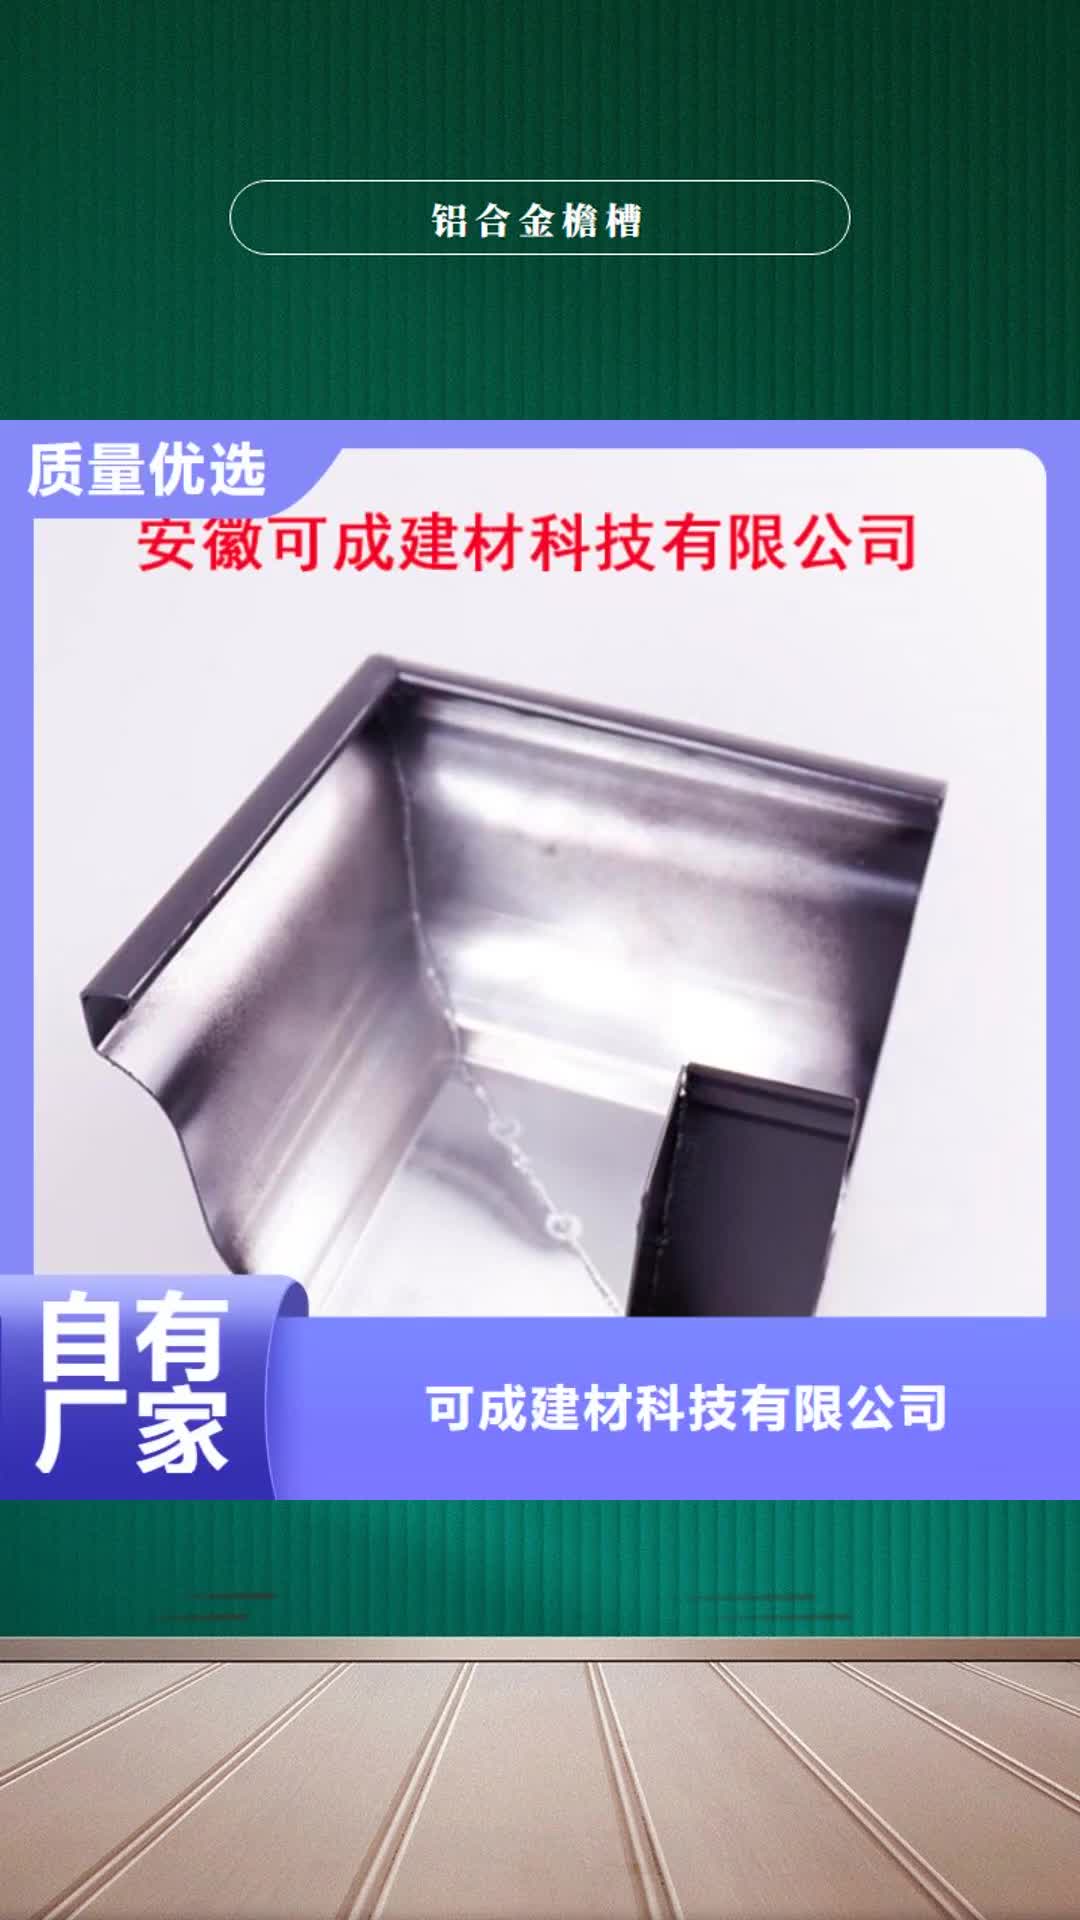 广州 铝合金檐槽【PVC成品天沟】销售的是诚信